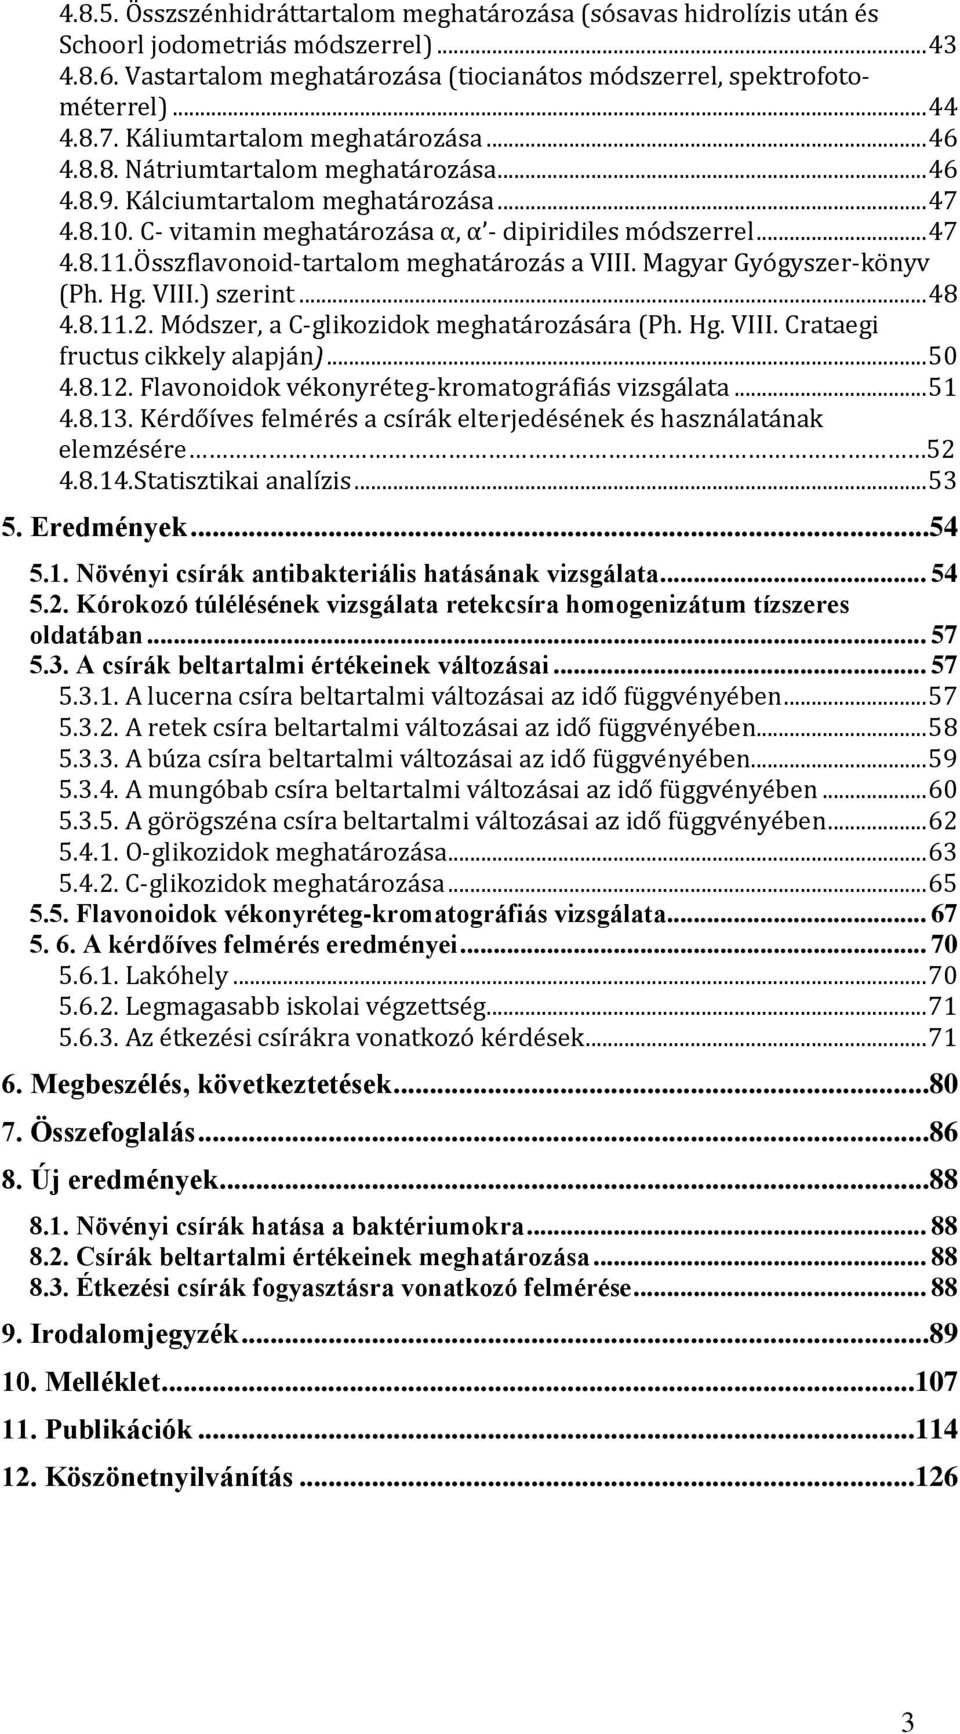 Összflavonoid-tartalom meghatározás a VIII. Magyar Gyógyszer-könyv (Ph. Hg. VIII.) szerint... 48 4.8.11.2. Módszer, a C-glikozidok meghatározására (Ph. Hg. VIII. Crataegi fructus cikkely alapján).